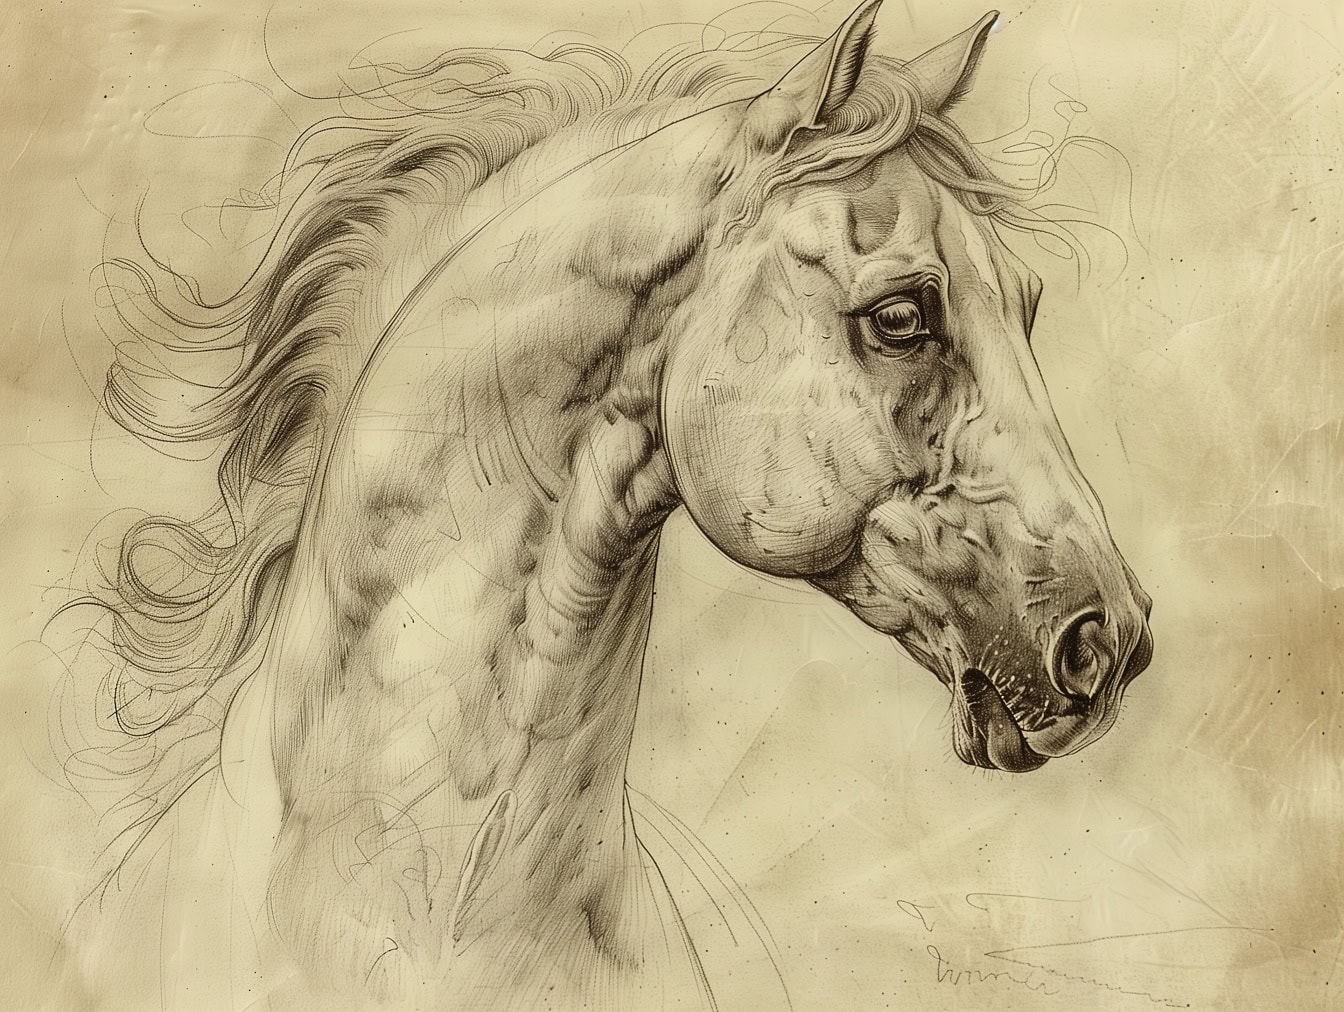 Szuper részletes vázlat a ló fejéről a mén orrának, szájának és szemének részleteivel